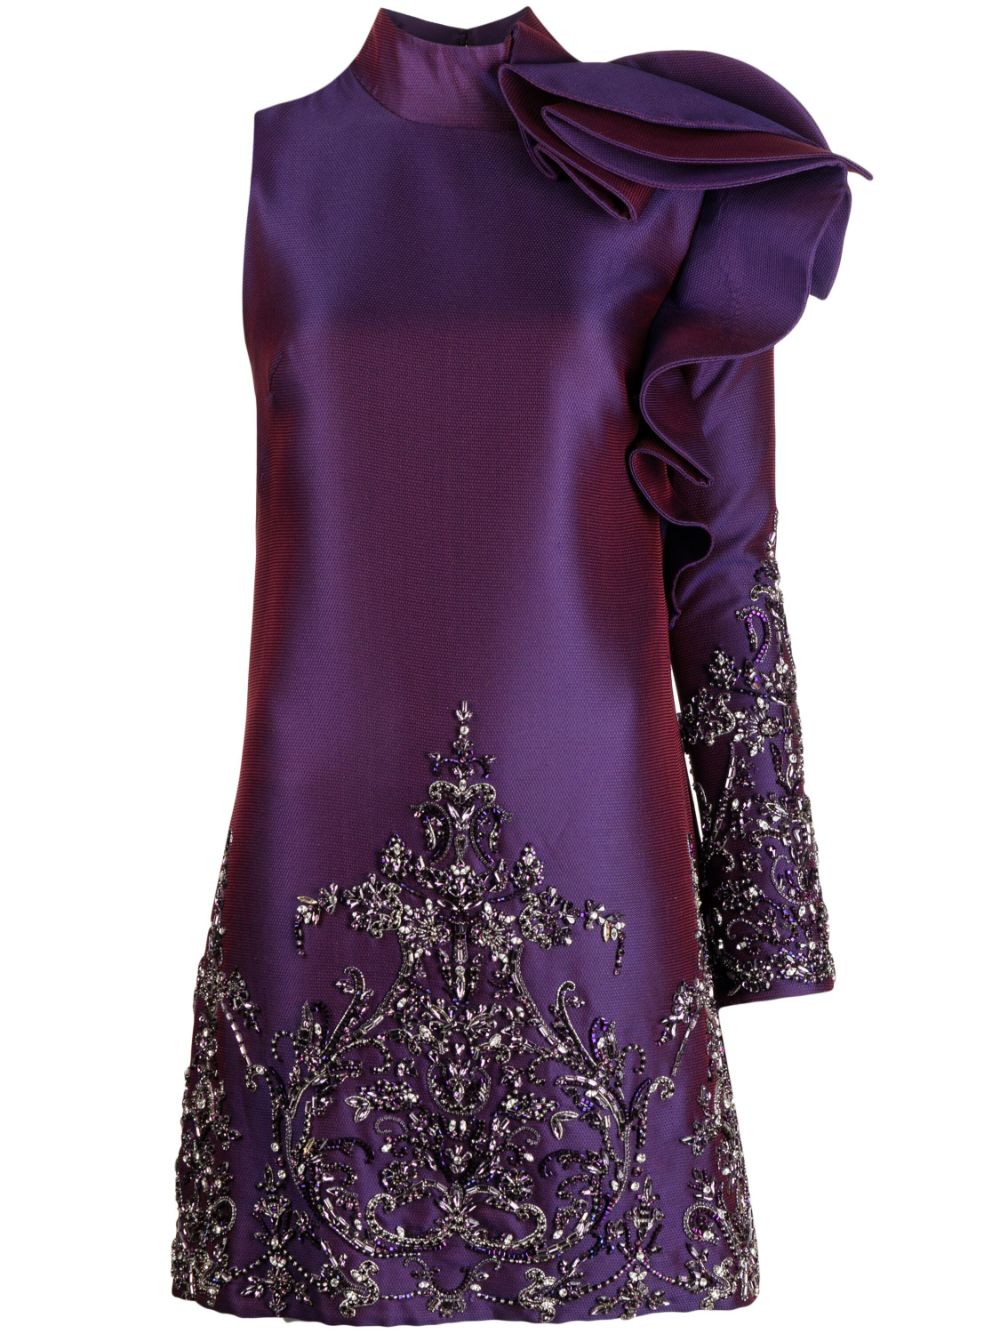 Saiid Kobeisy One-Shoulder-Kleid mit Tüll - Violett von Saiid Kobeisy